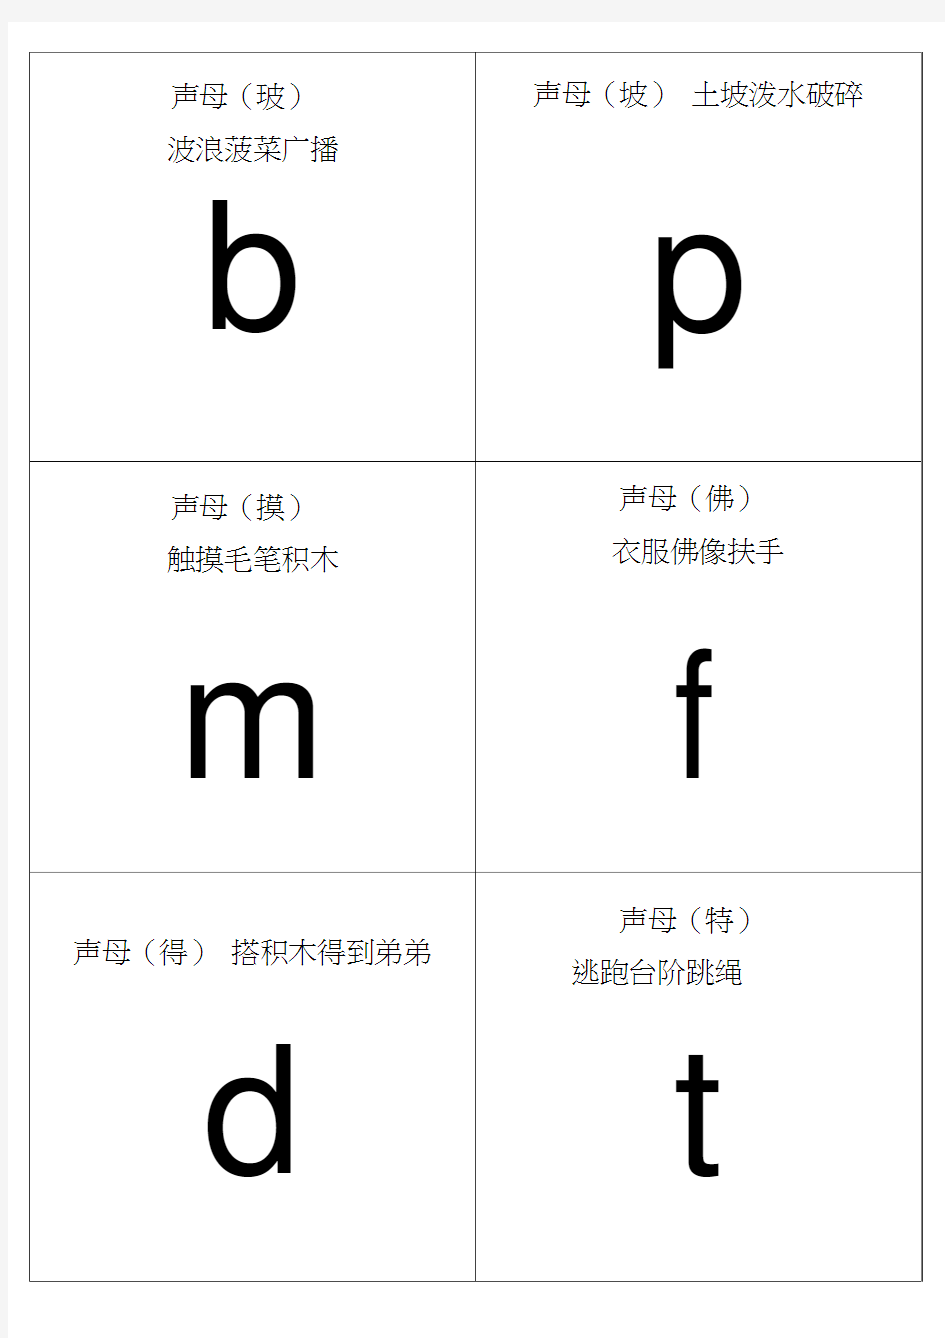 自己整理汉语拼音字母表卡片-读音(A4直接打印)